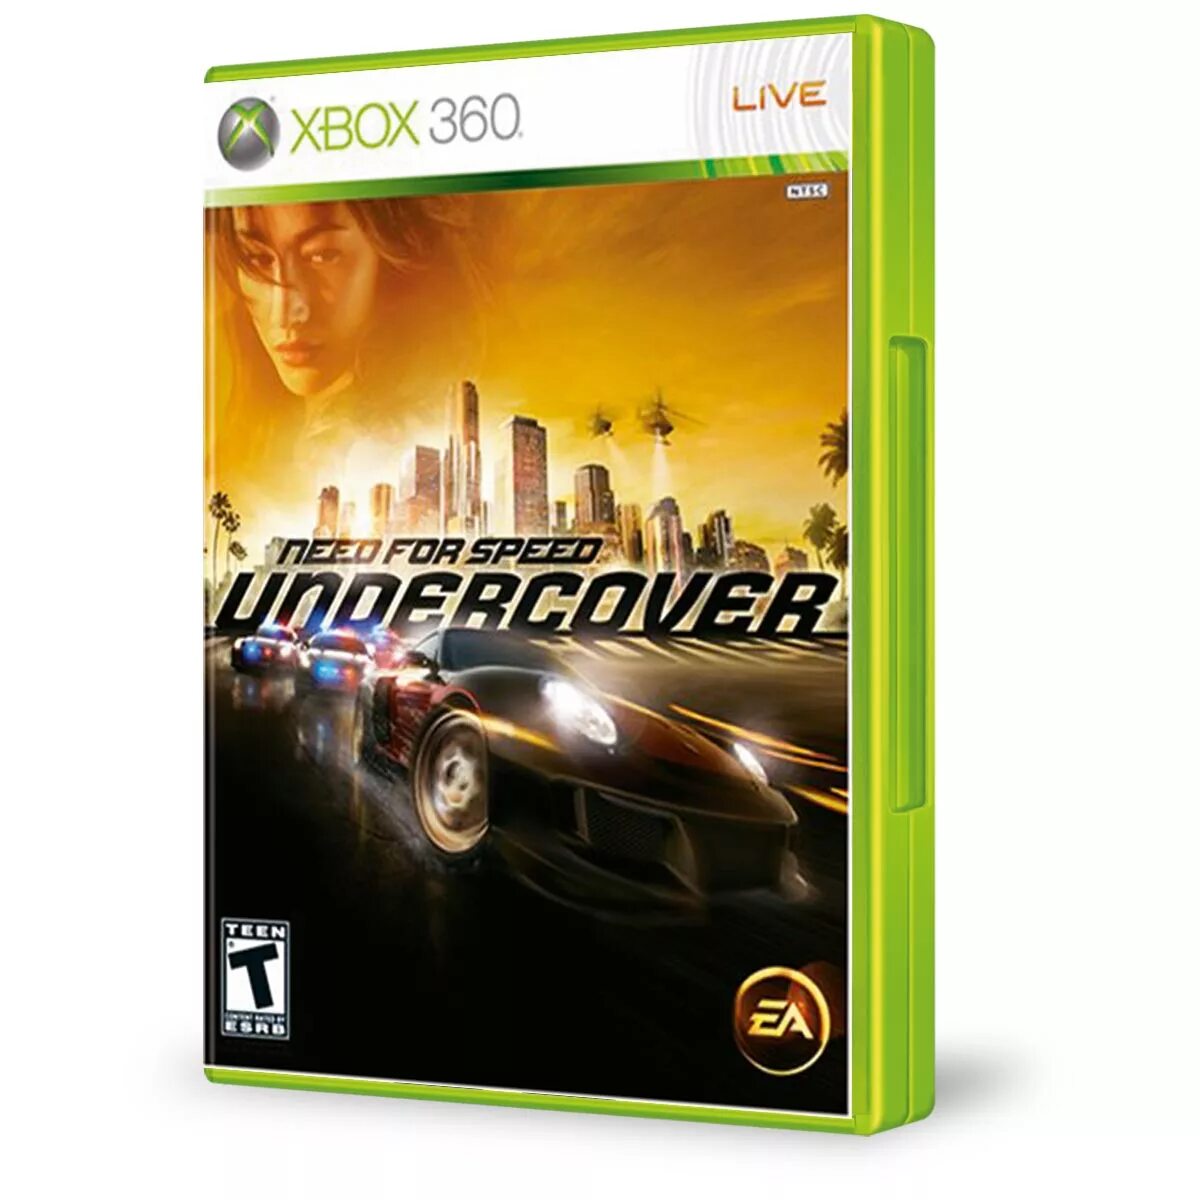 Гонки на xbox series. NFS Undercover на хбокс 360. Игры на Xbox 360 NFS. Диск на Xbox 360 NFS. Нфс андерковер на Икс бокс 360.